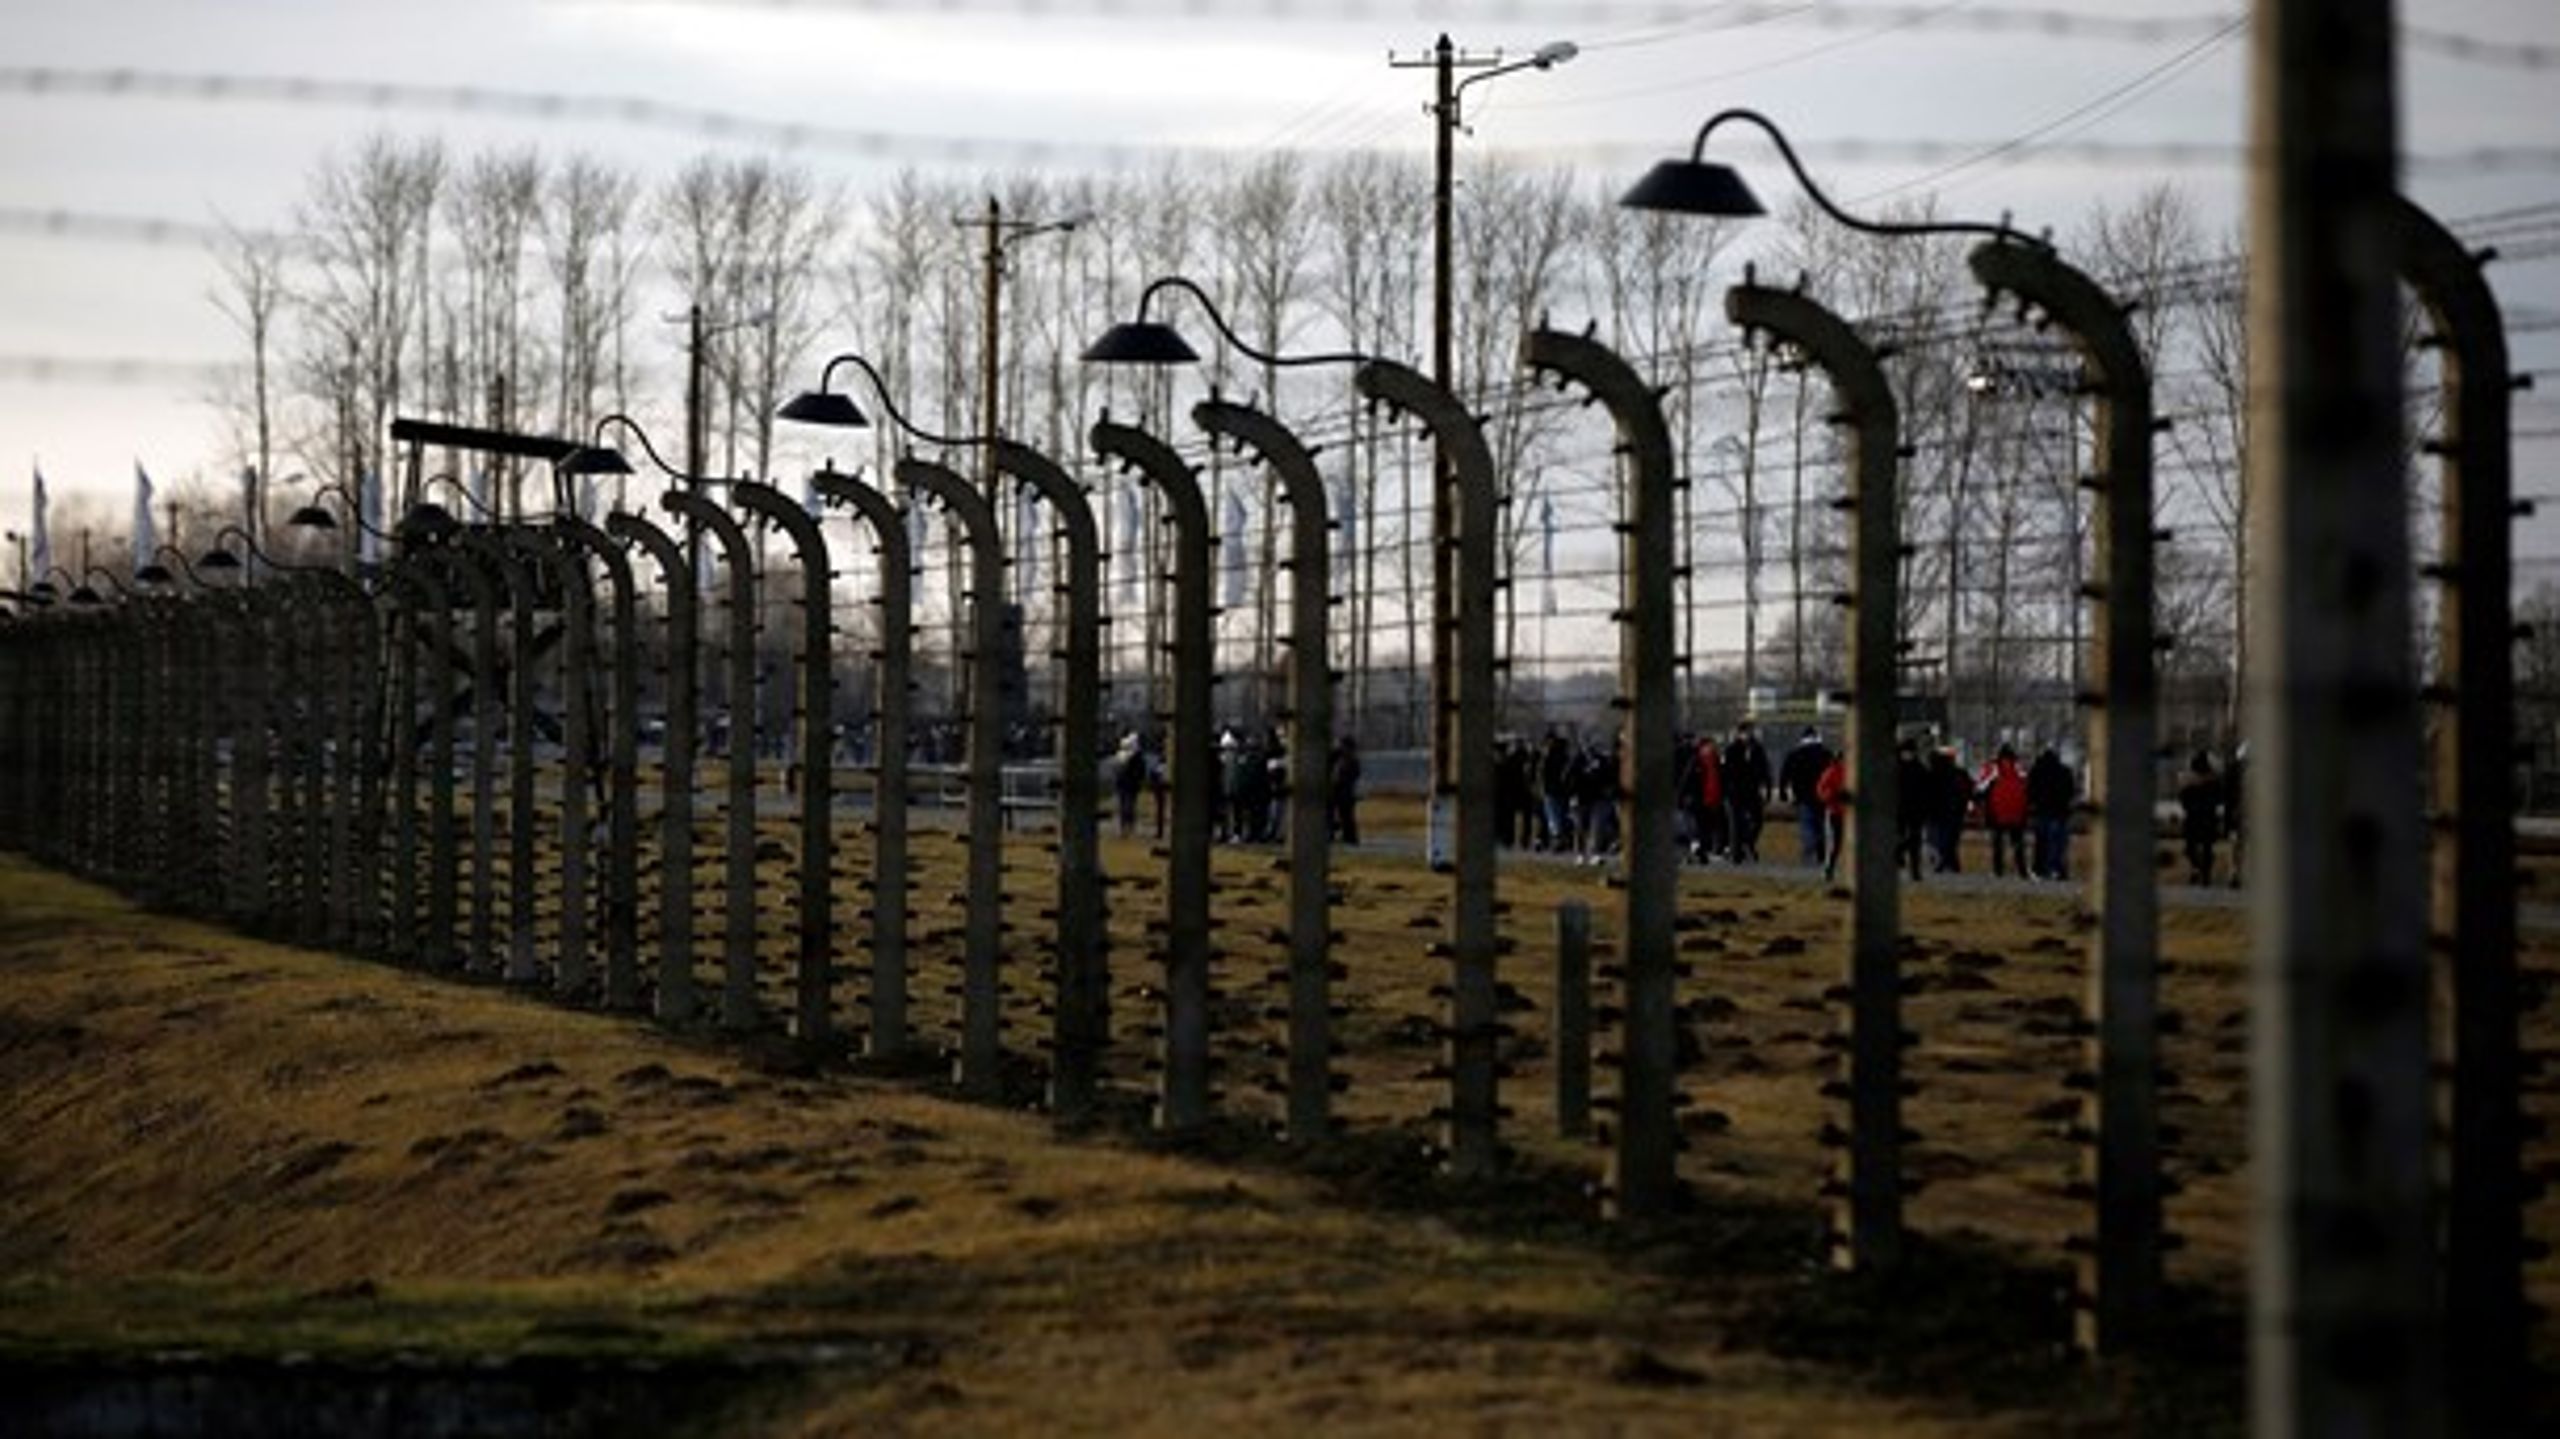 Navnet Auschwitz er blevet synonymt med den nyere histories mest ufattelige forbrydelse mod menneskeheden, skriver Jens Christian Grøndahl.